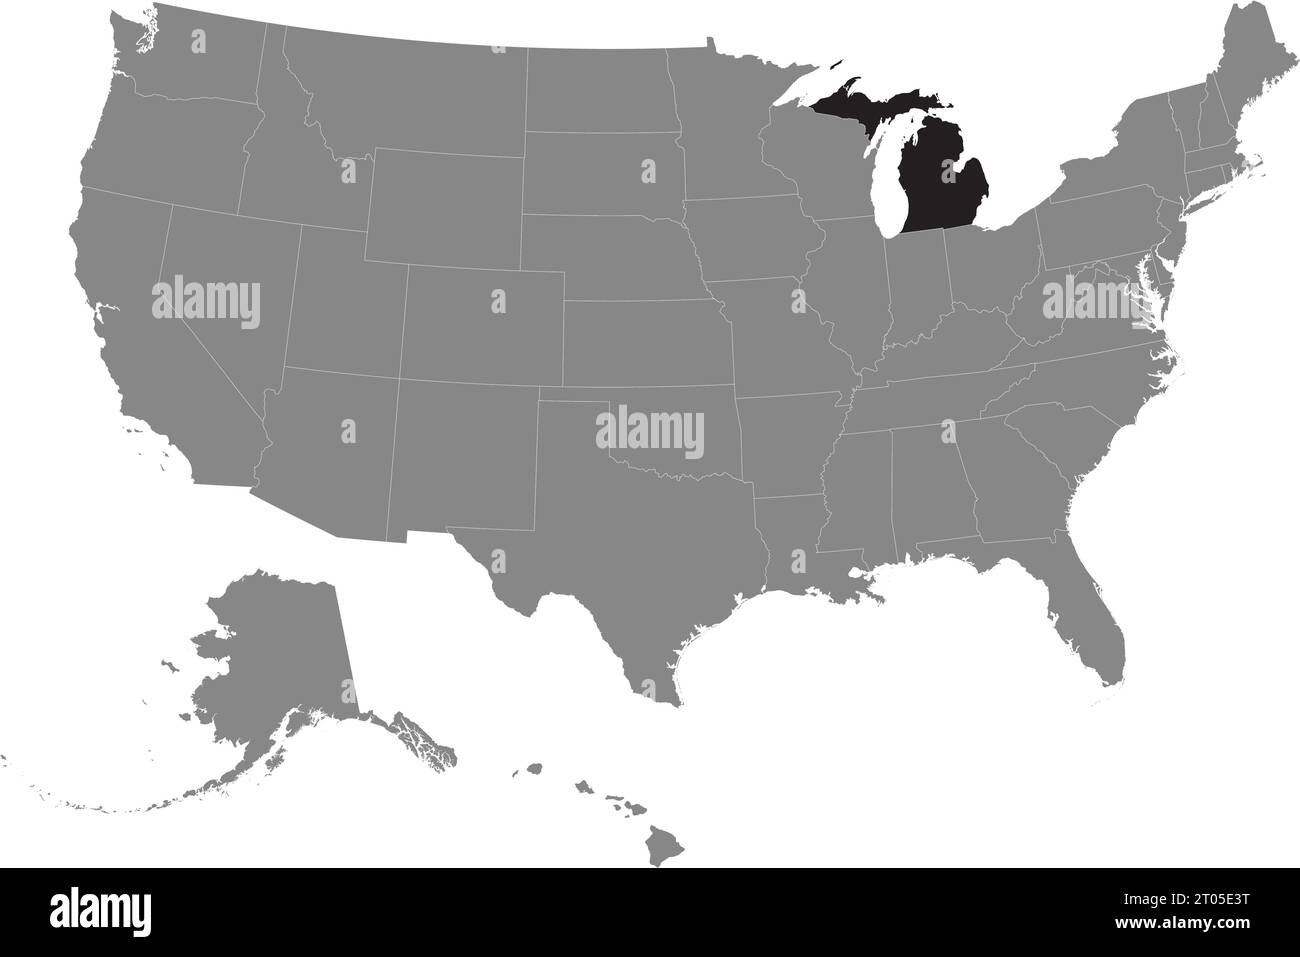 Schwarze CMYK-Bundeskarte von MICHIGAN in detaillierter grauer, leerer politischer Karte der Vereinigten Staaten von Amerika auf transparentem Hintergrund Stock Vektor